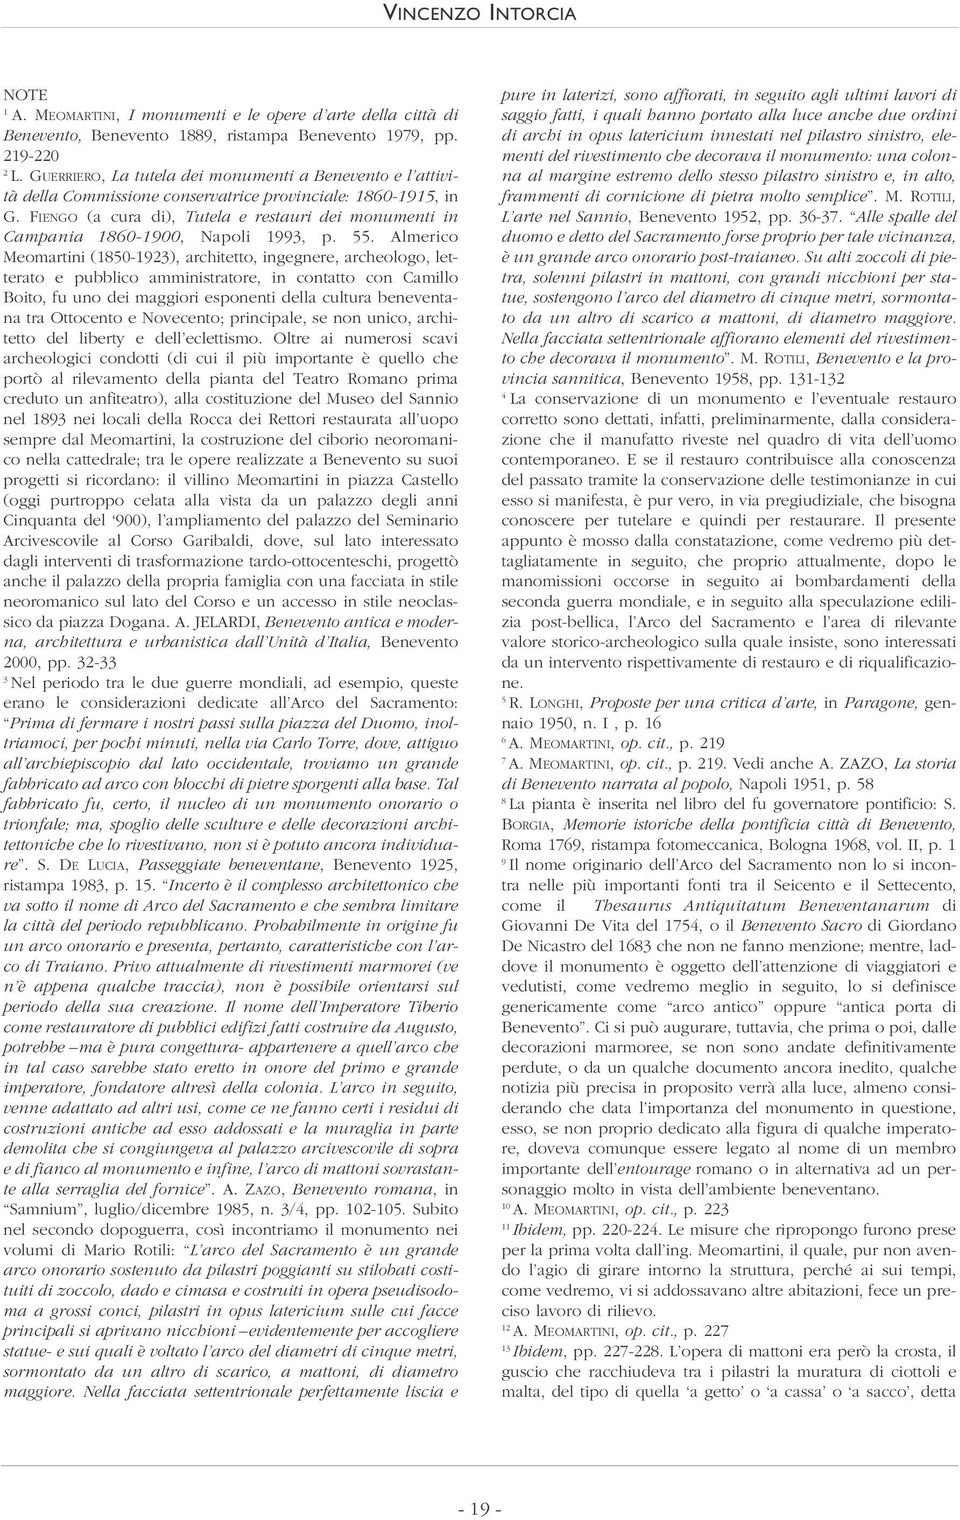 FIENGO (a cura di), Tutela e restauri dei monumenti in Campania 1860-1900, Napoli 1993, p. 55.